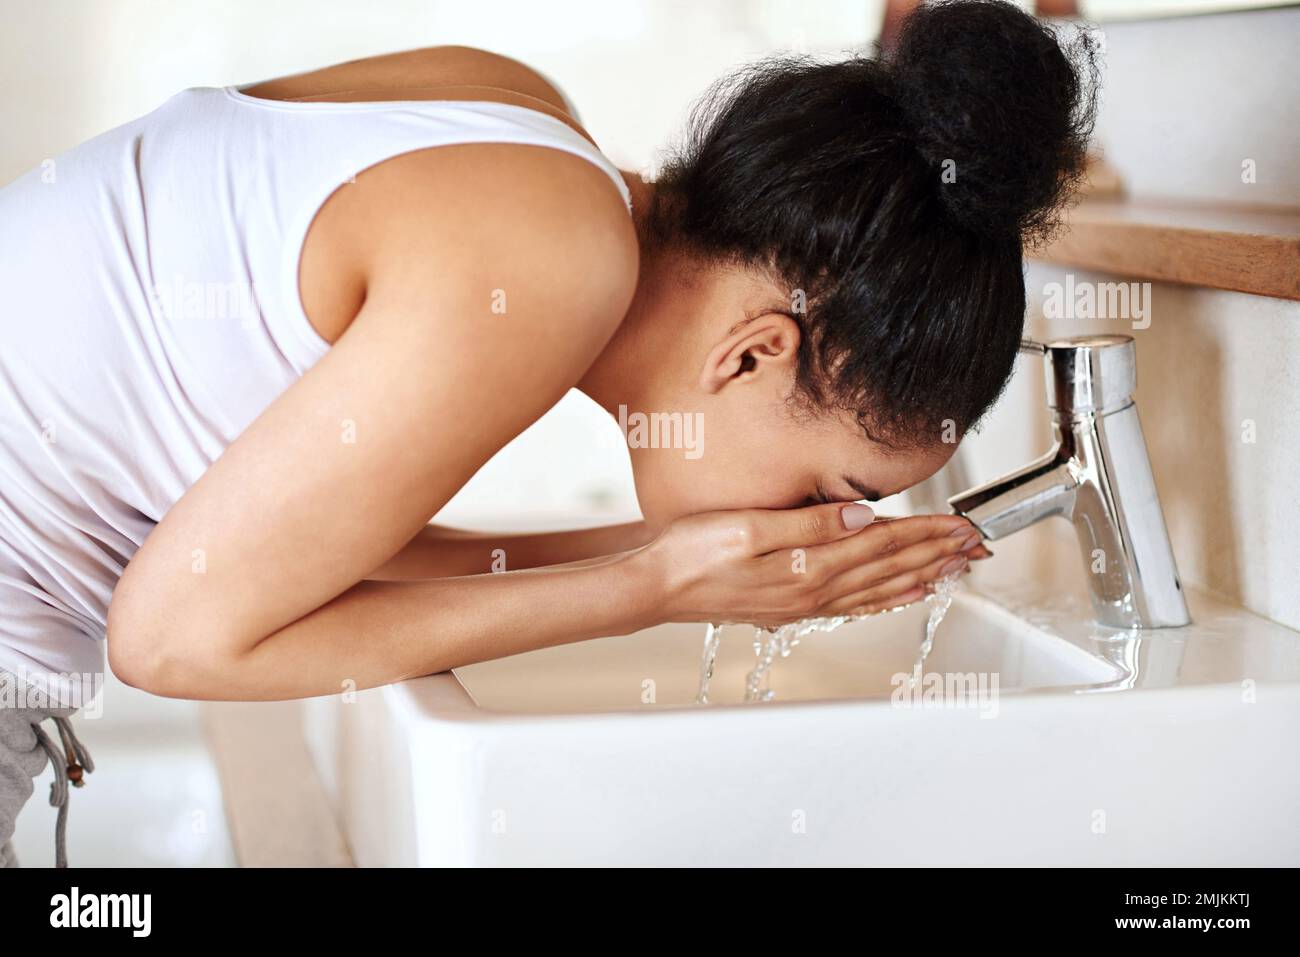 Aufwachen mit einem erfrischenden Spritzer. Eine junge Frau, die sich im Bad das Gesicht wäscht. Stockfoto